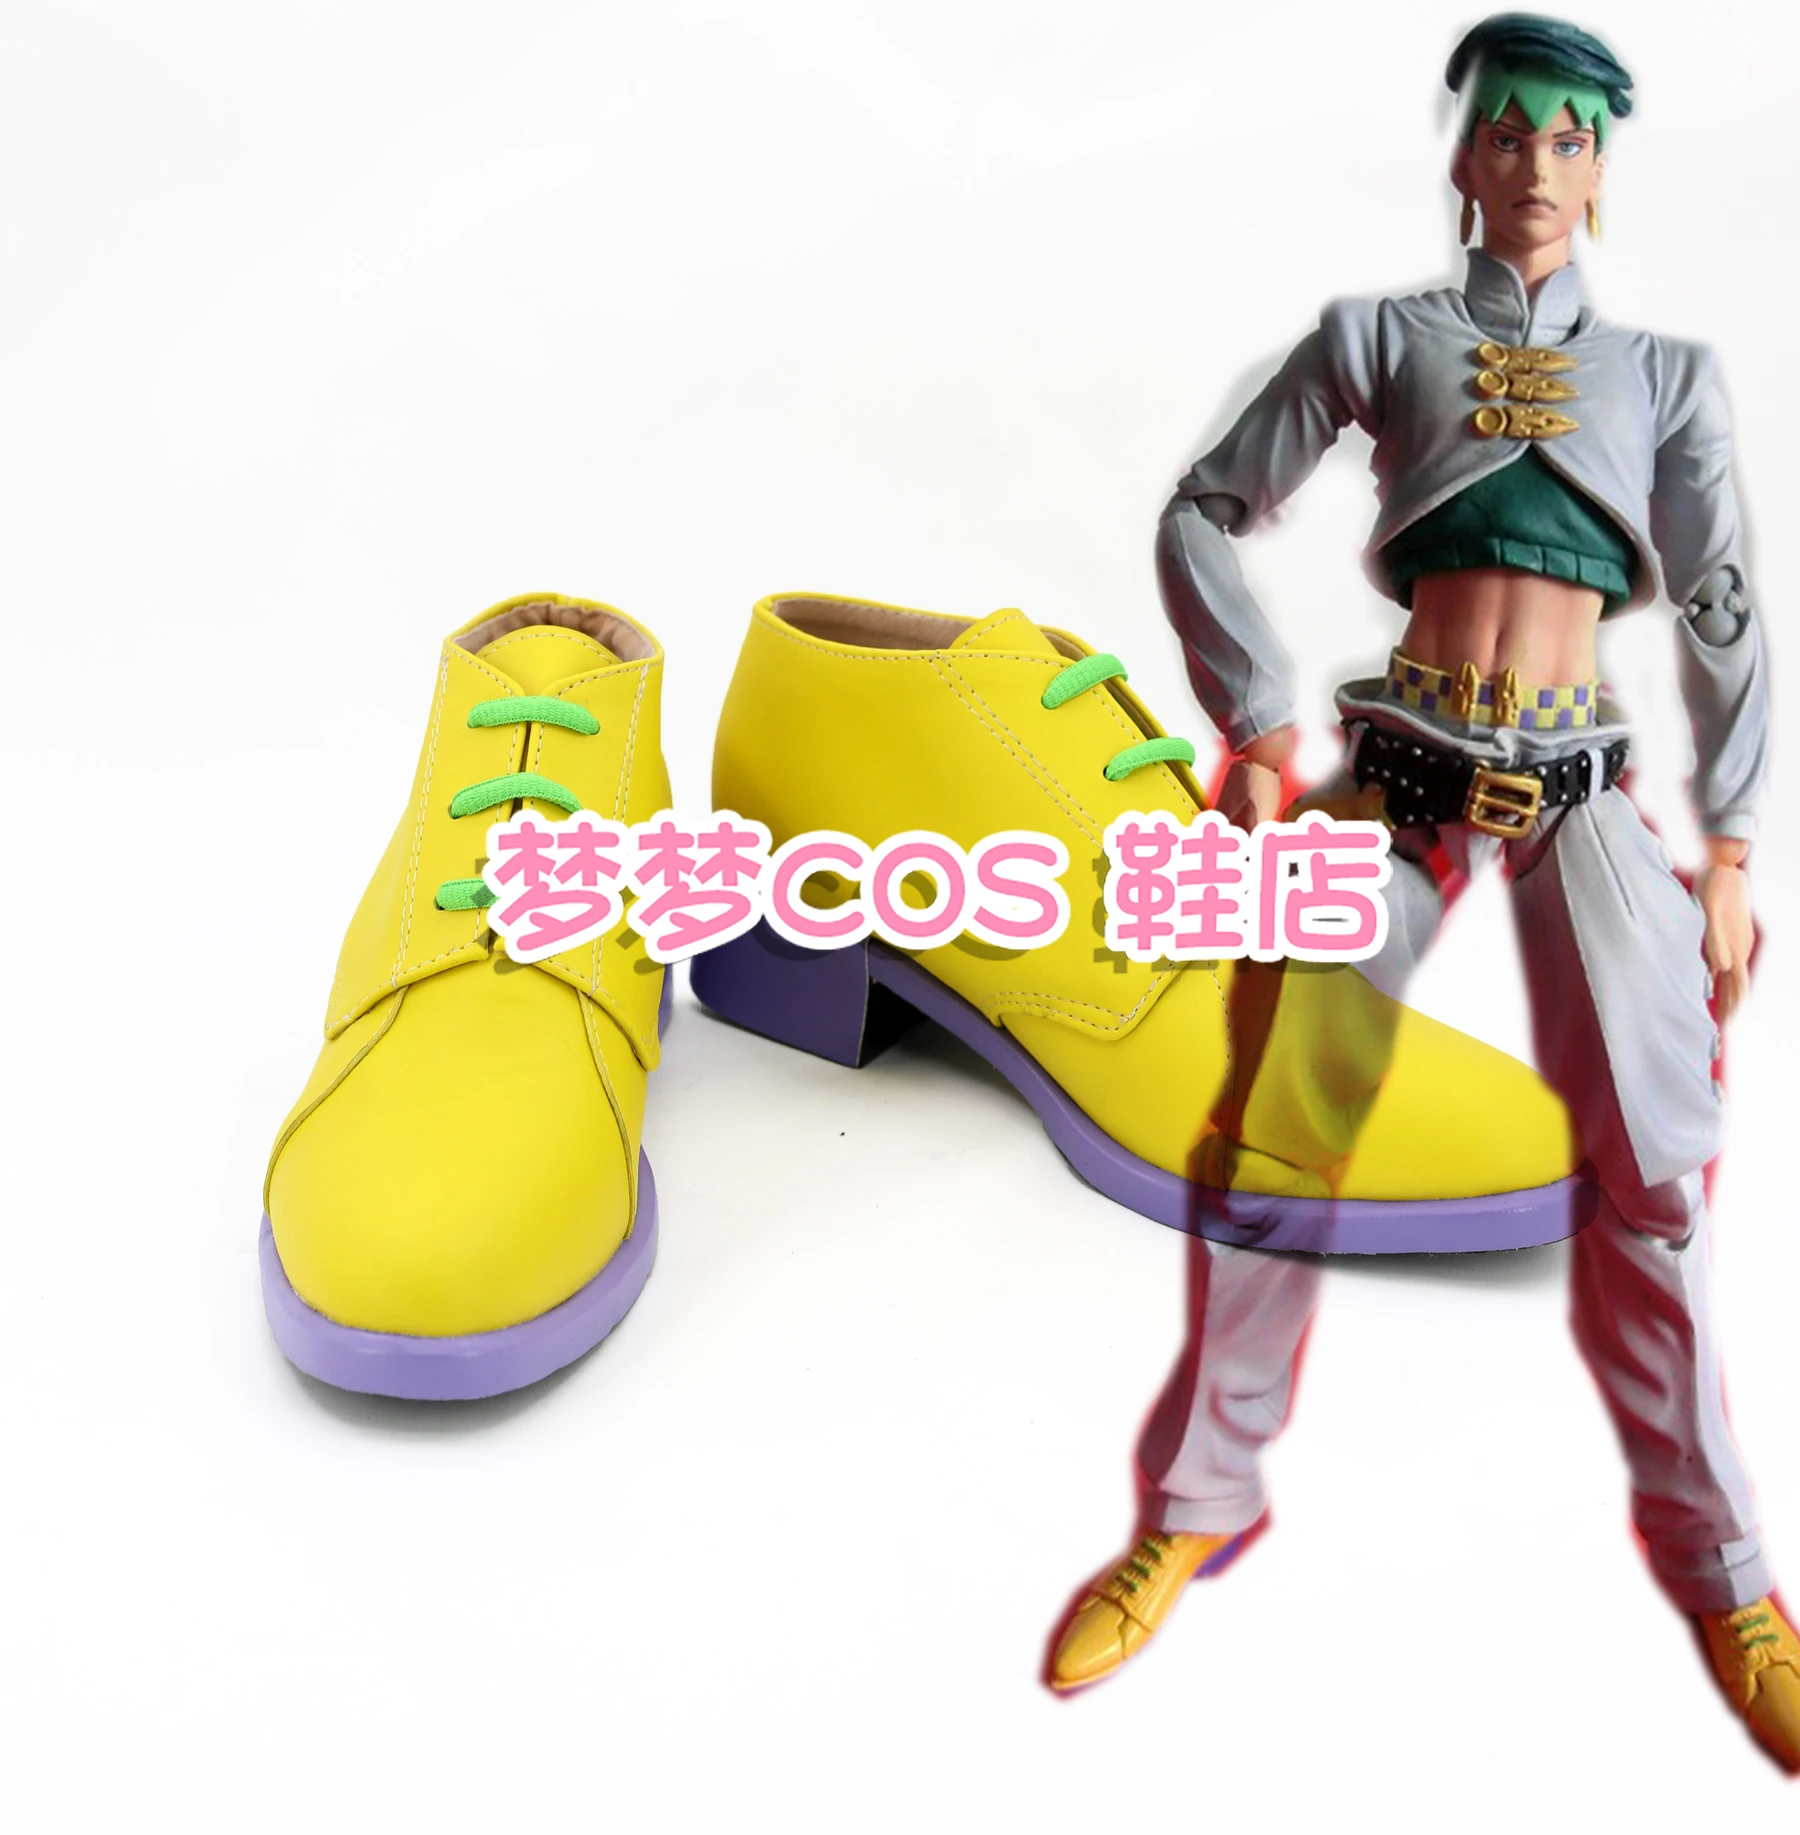 

Обувь для косплея Rohan Kishibe из аниме «Невероятные приключения Джоджо», мужские ботинки на заказ, европейские размеры